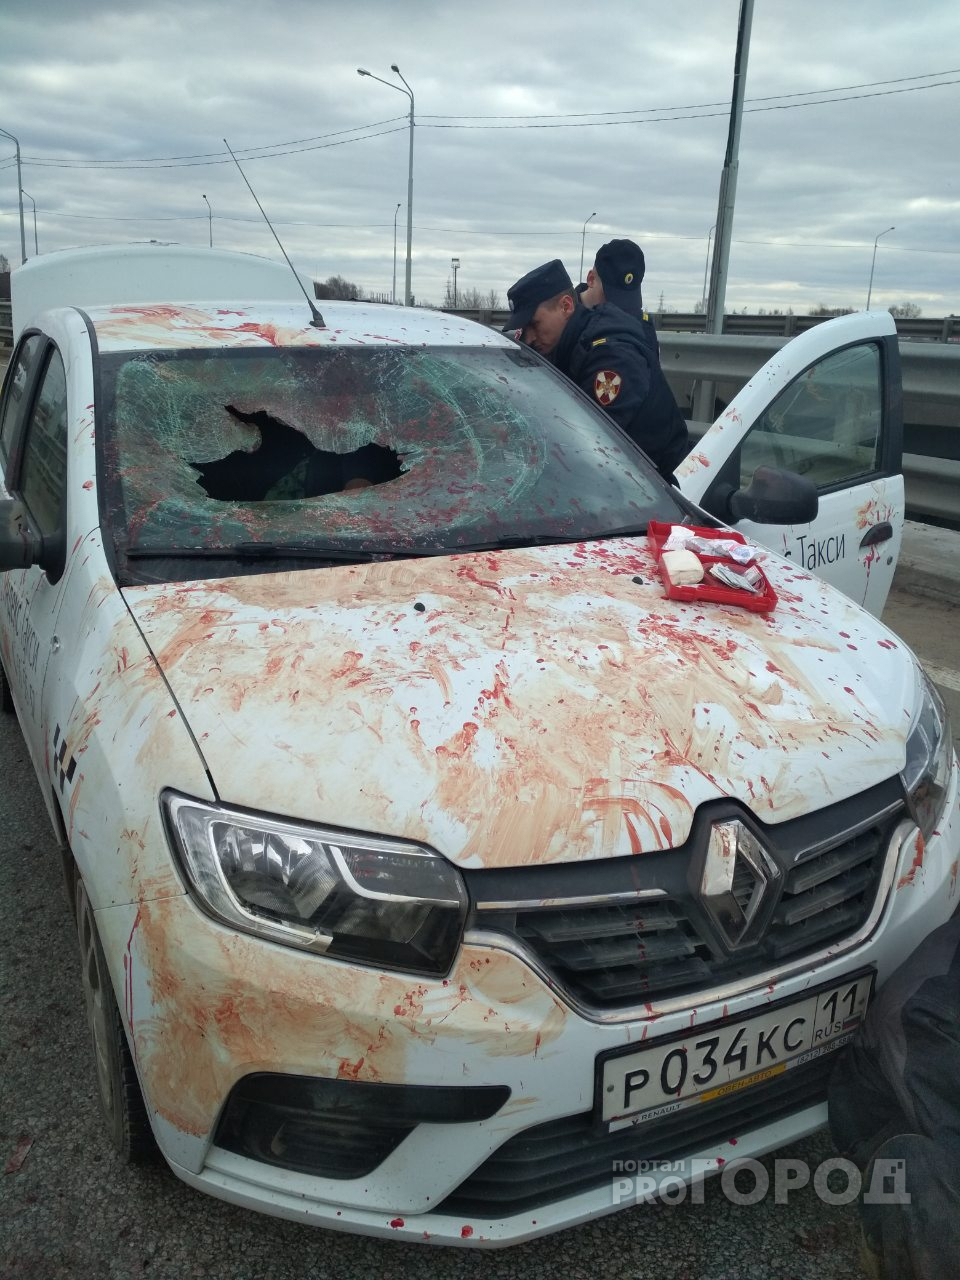 "Бил стекла и брызгал кровью": пассажир пытался добить водителя такси в Ярославле. Видео